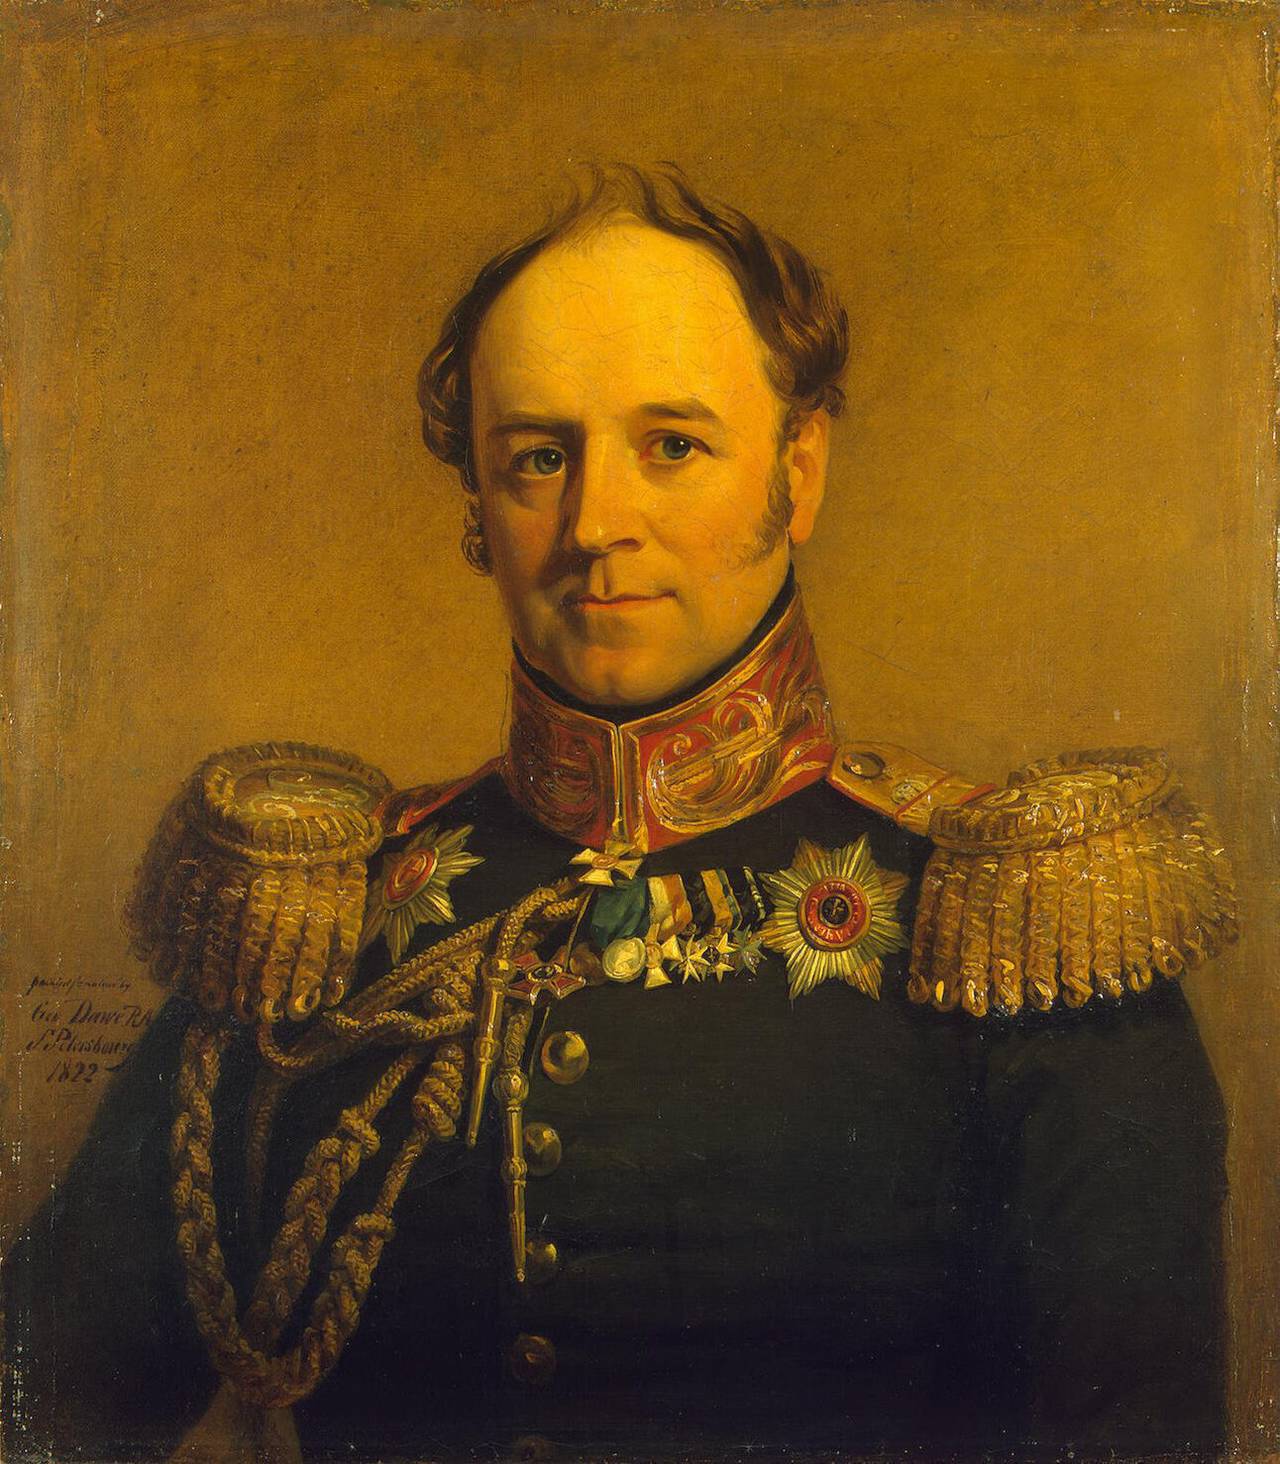 Alexander Khristoforovich Benkendorf - ein wunderbarer russischer Offizier, der Held des 1812-Krieges